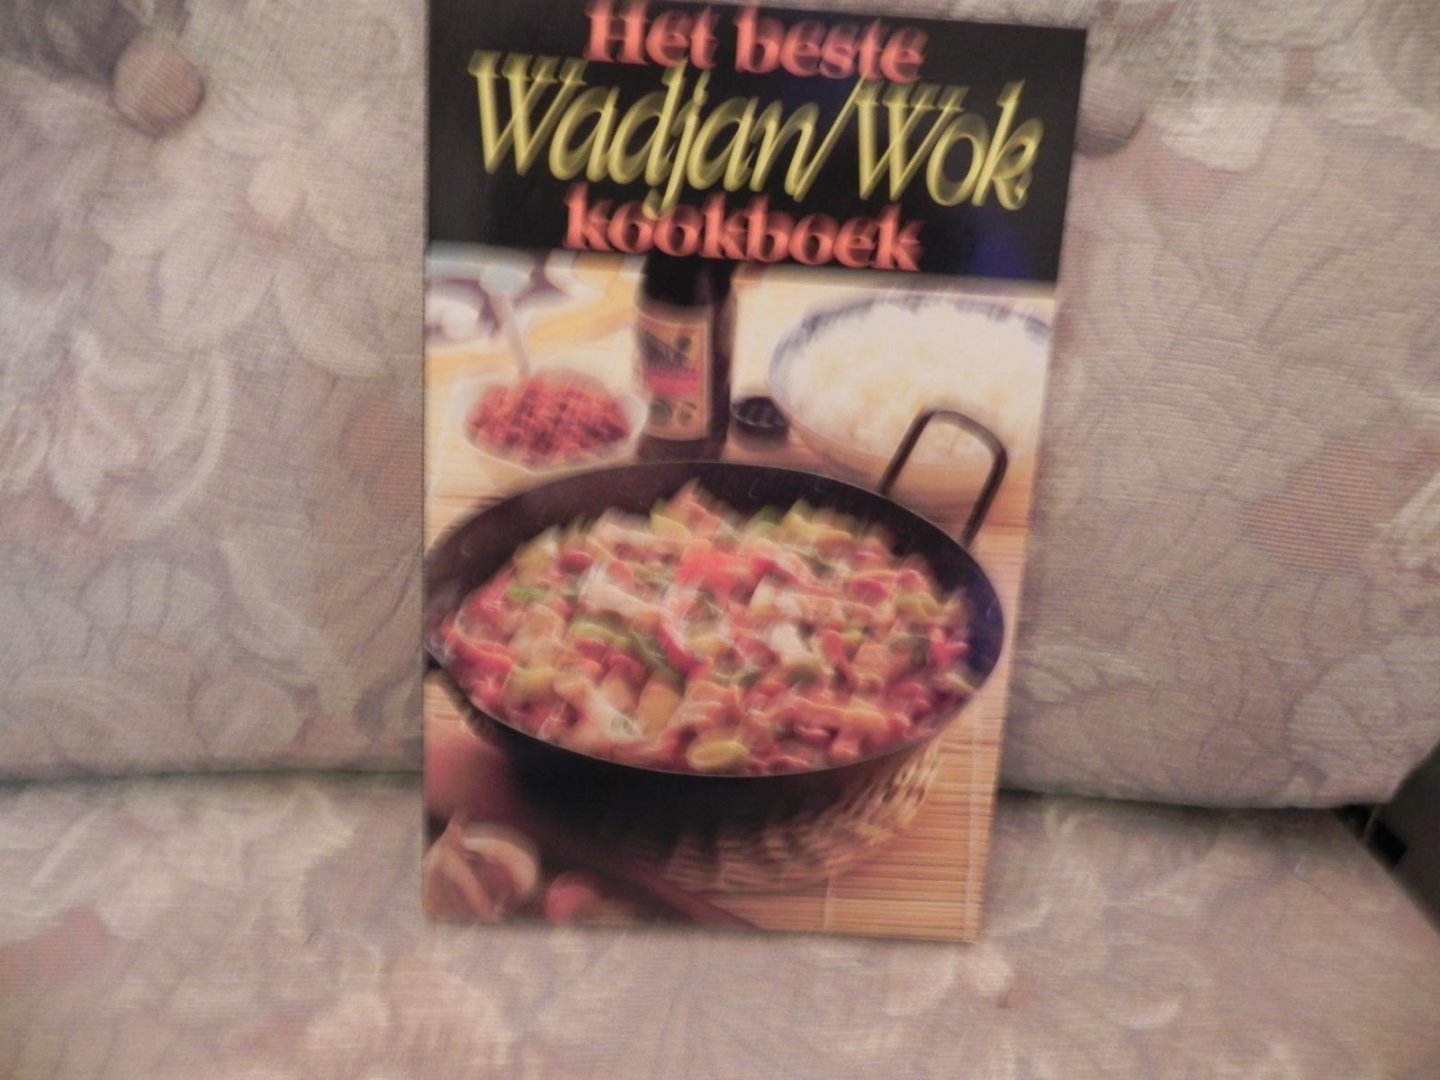 Fokkelien Dijkstra - Het Beste Wadjan/Wok kookboek